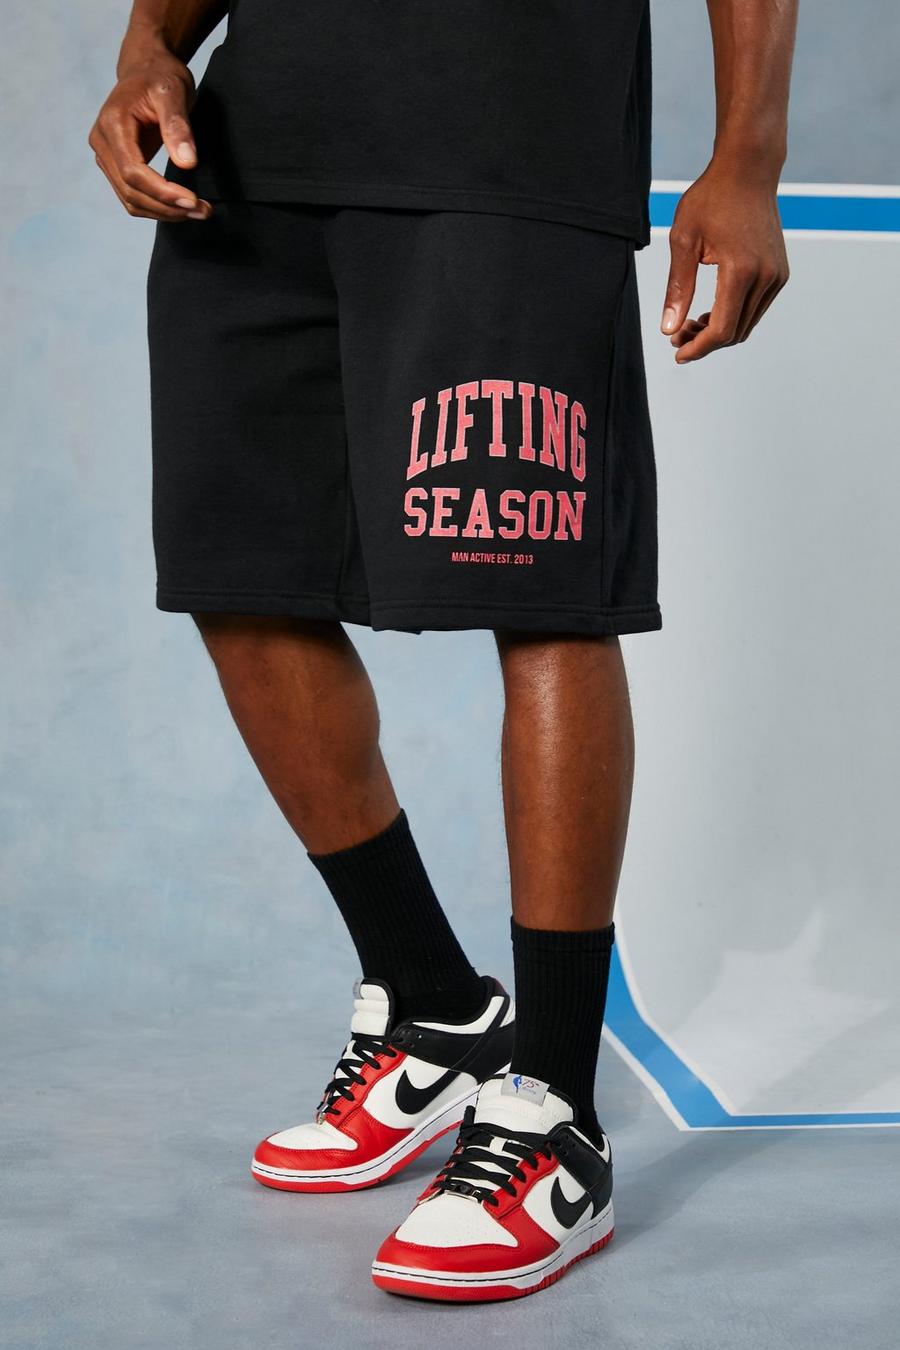 Black Man Active Jersey Lifting Season Shorts image number 1